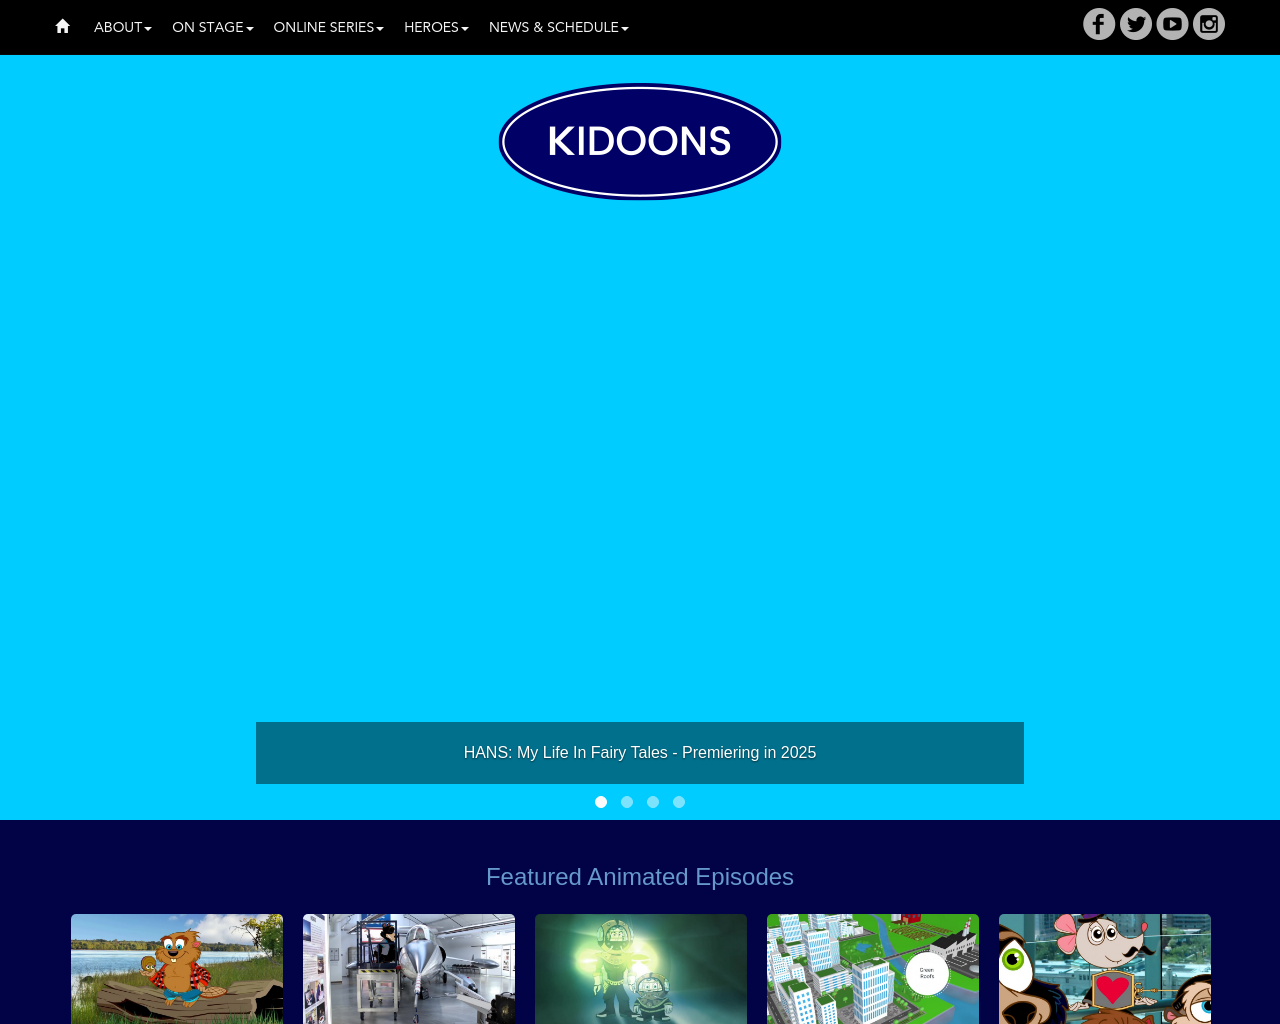 kidoons.com